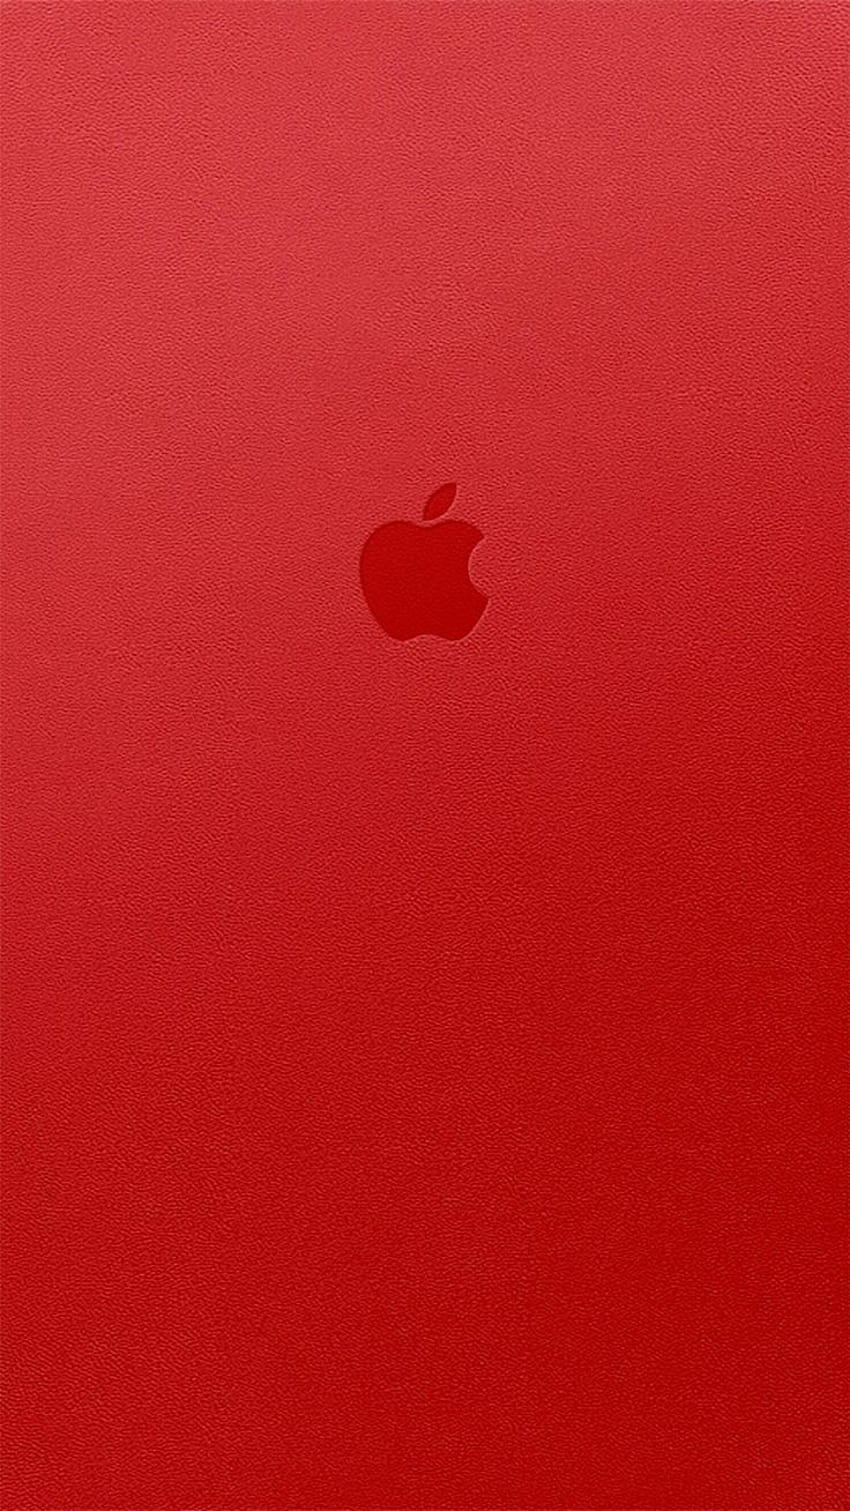 Apple iPhone 6s Plus merah, Logo Apple Merah 6 wallpaper ponsel HD